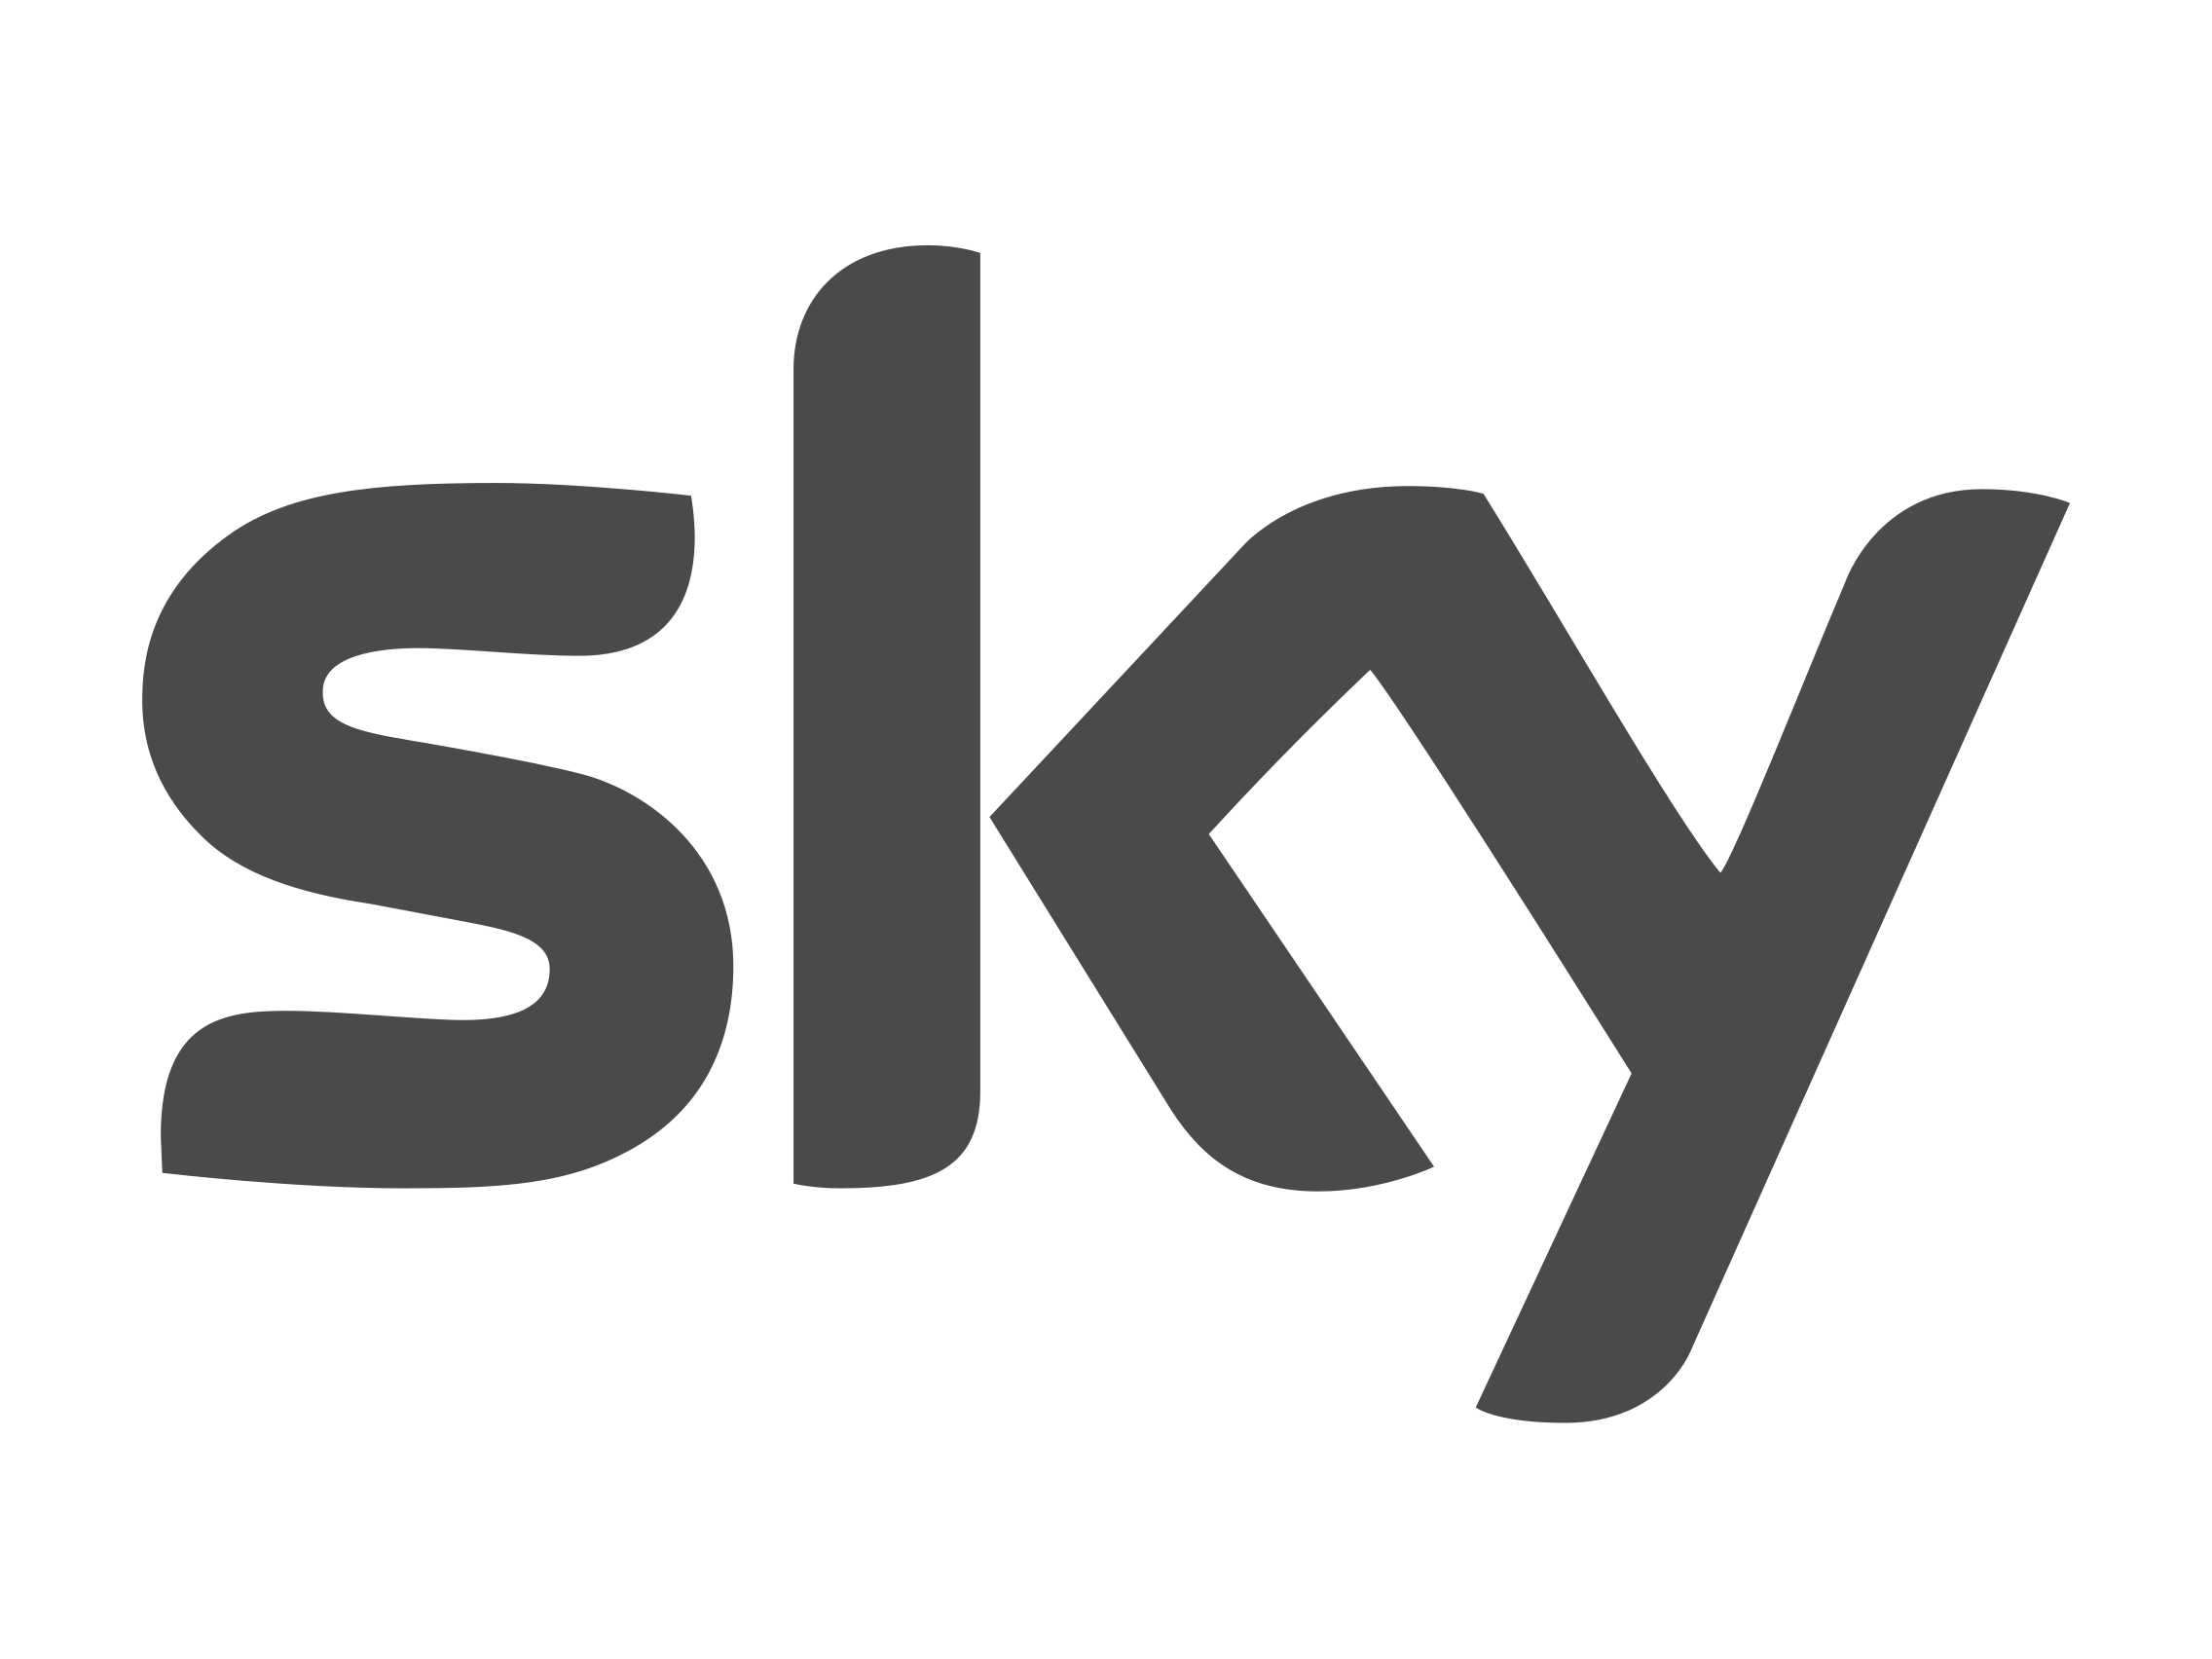 Grey Company Logo - Sky logo | Logok